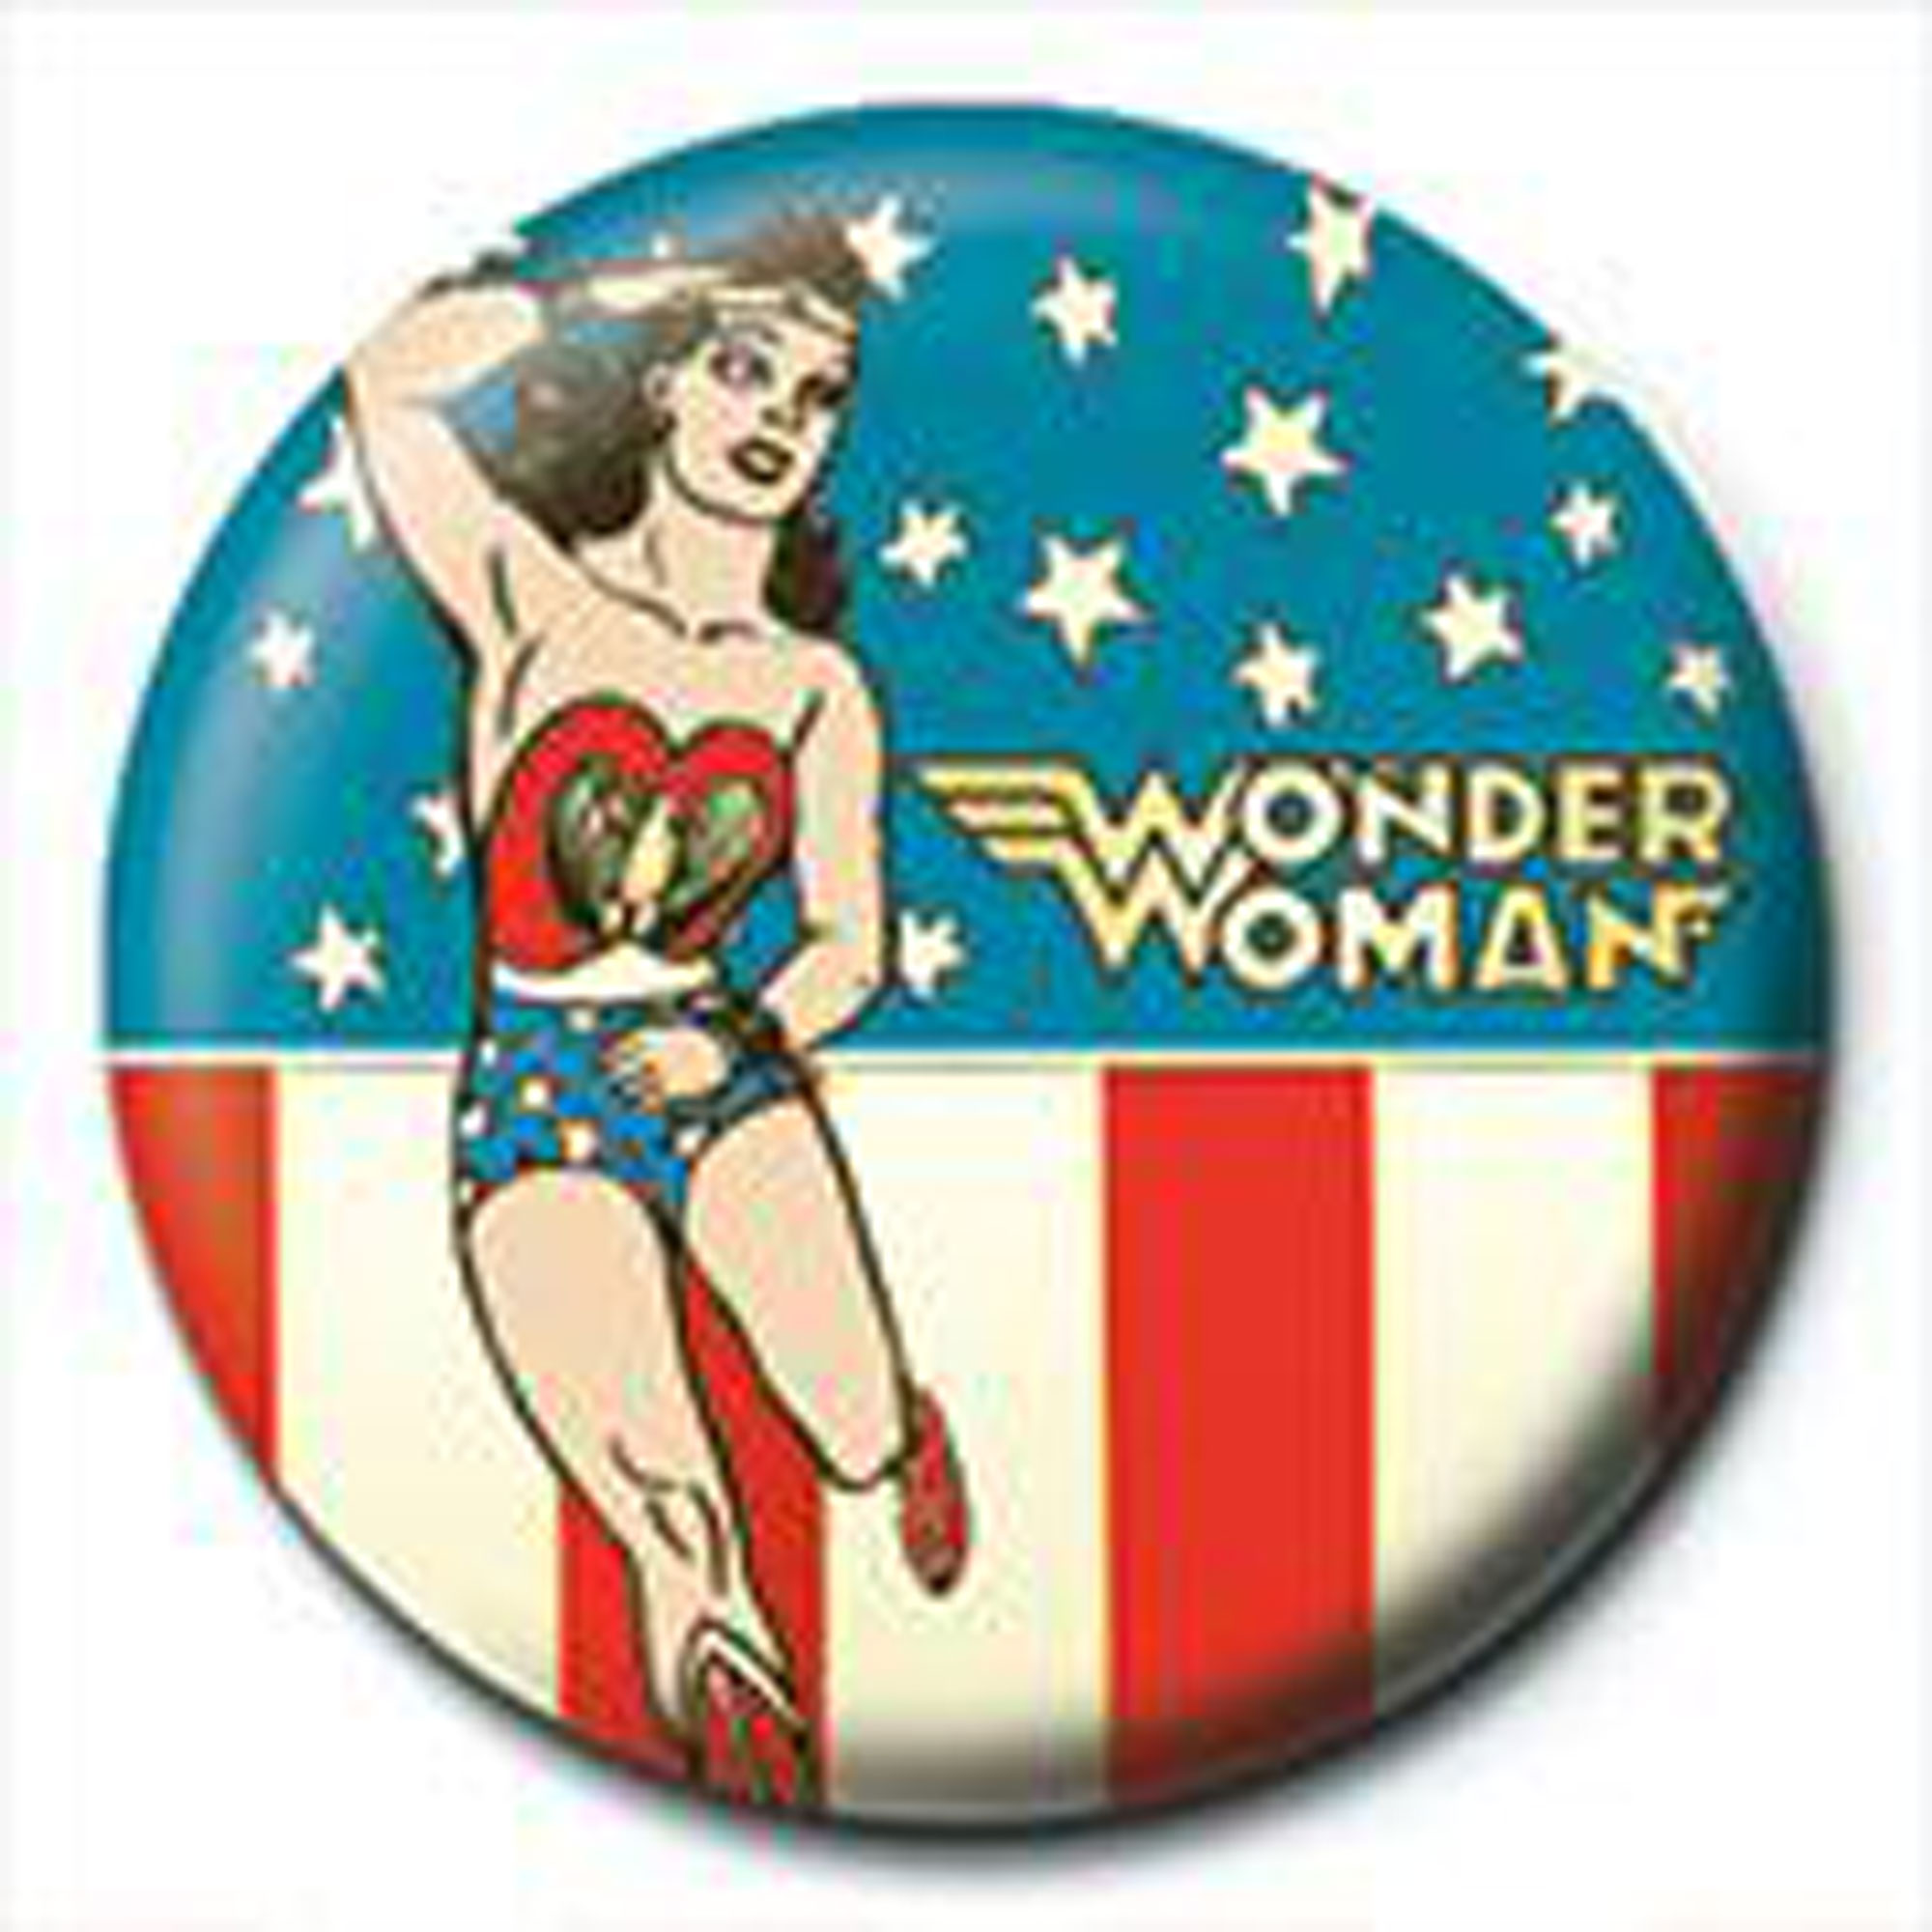 DC Comic Stars - & - Woman Wonder Stripes